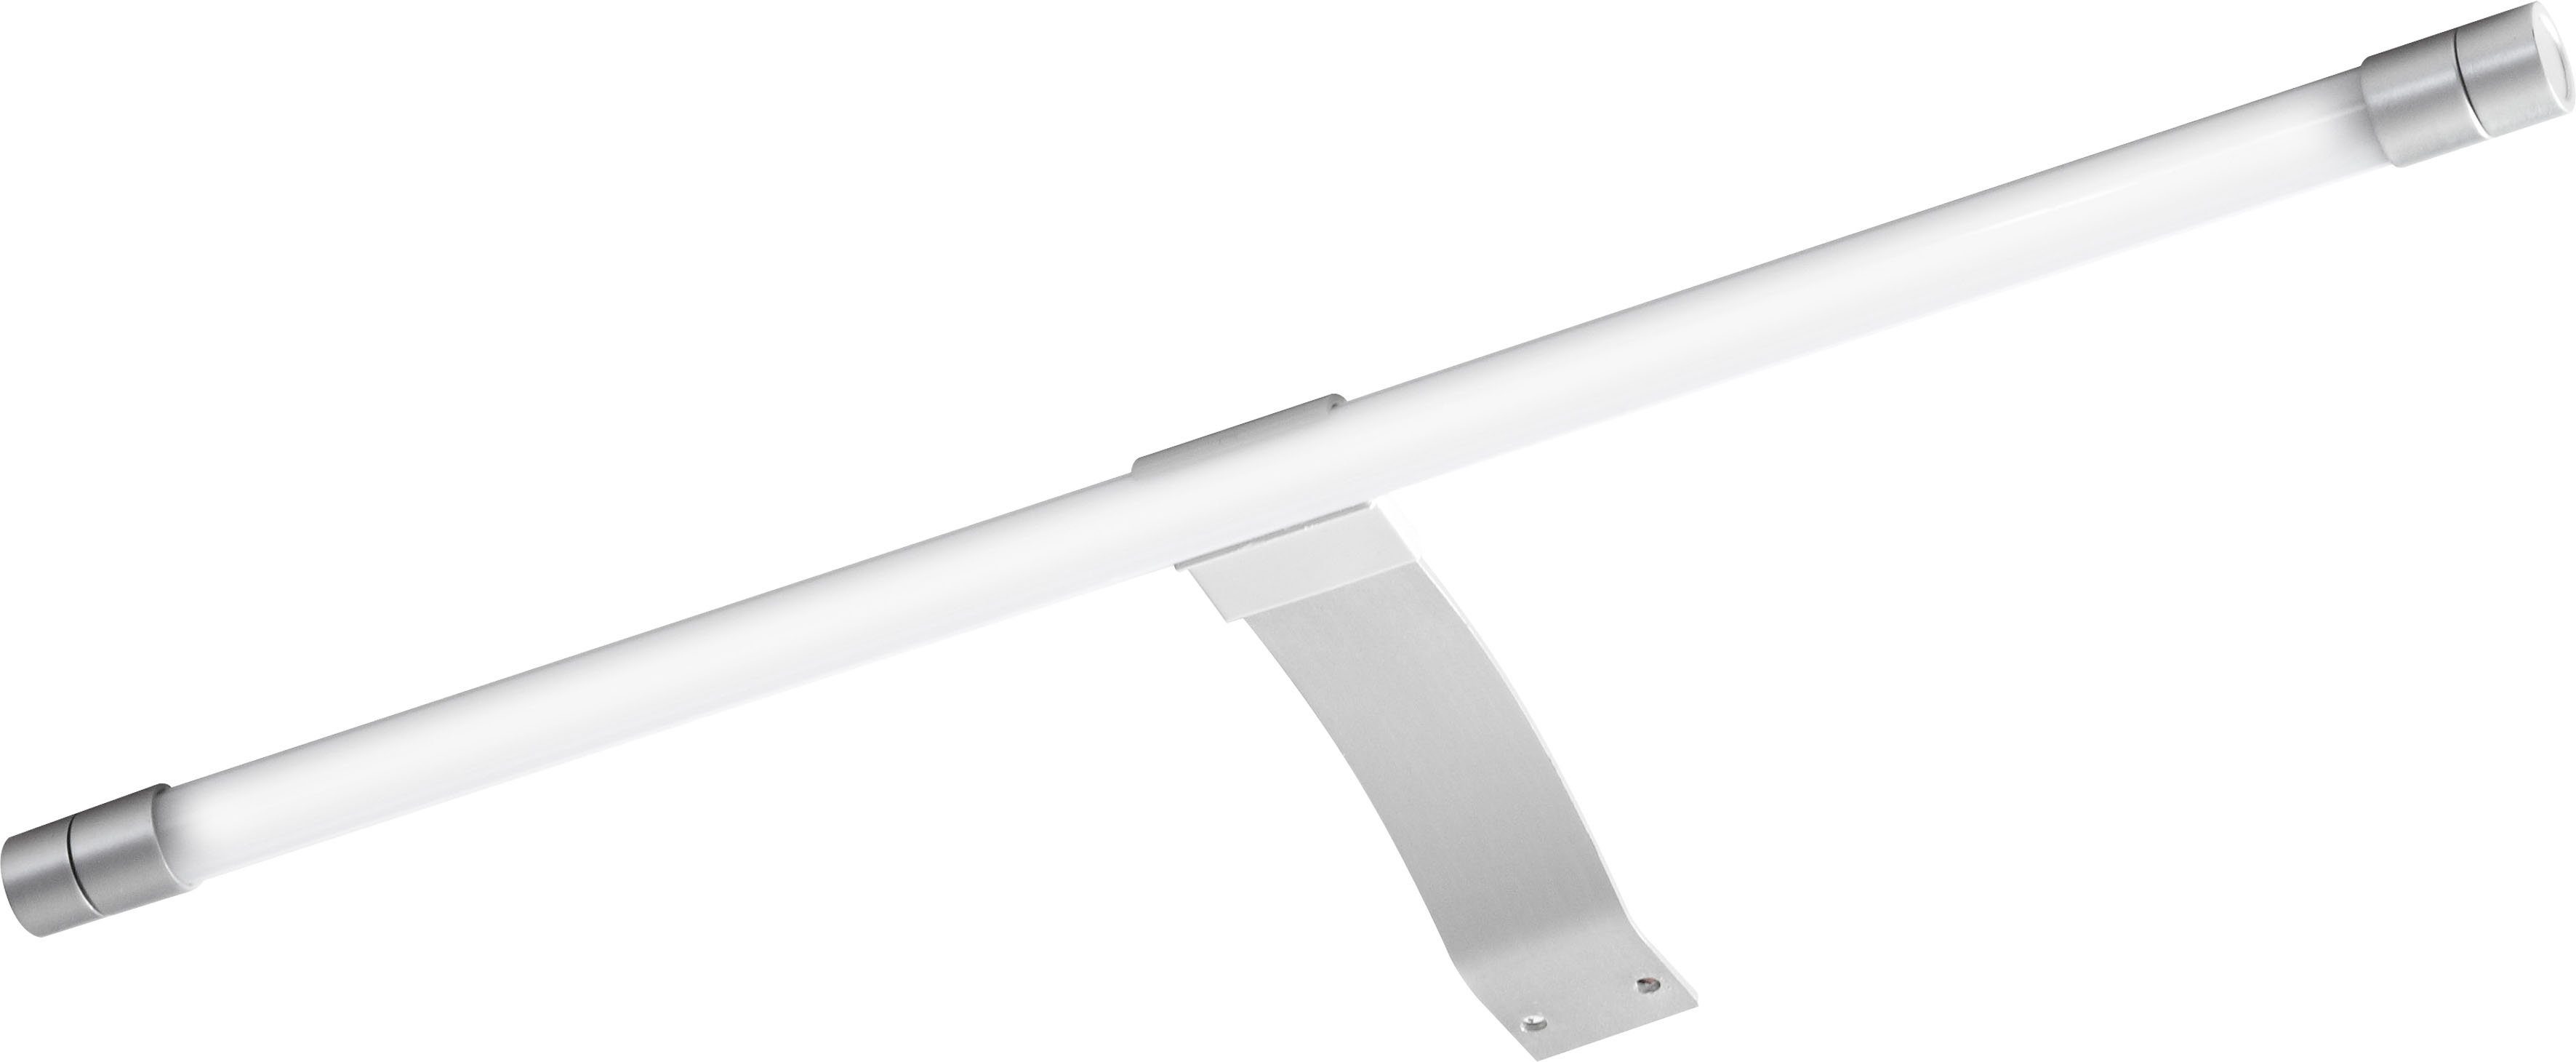 PELIPAL LED Spiegelleuchte Quickset 963, LED fest integriert, Kaltweiß,  Breite 40 cm, Lichtfarbe kaltweiß, Aufbauleuchte silberfarben